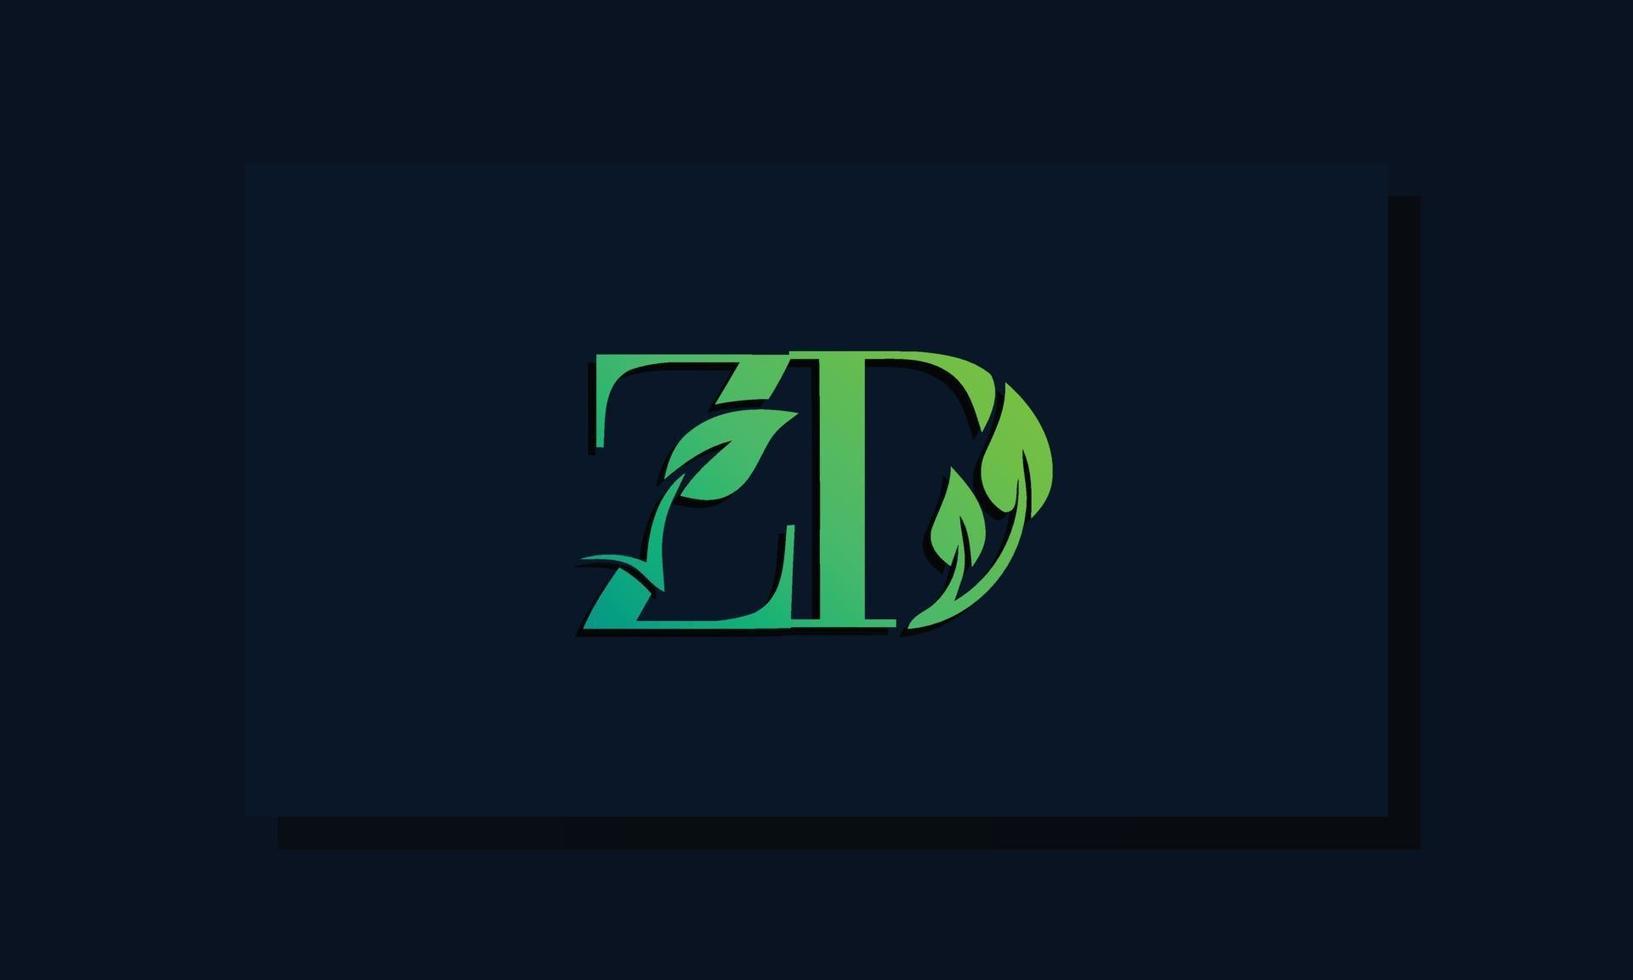 Anfangs-Zd-Logo im minimalen Blattstil vektor